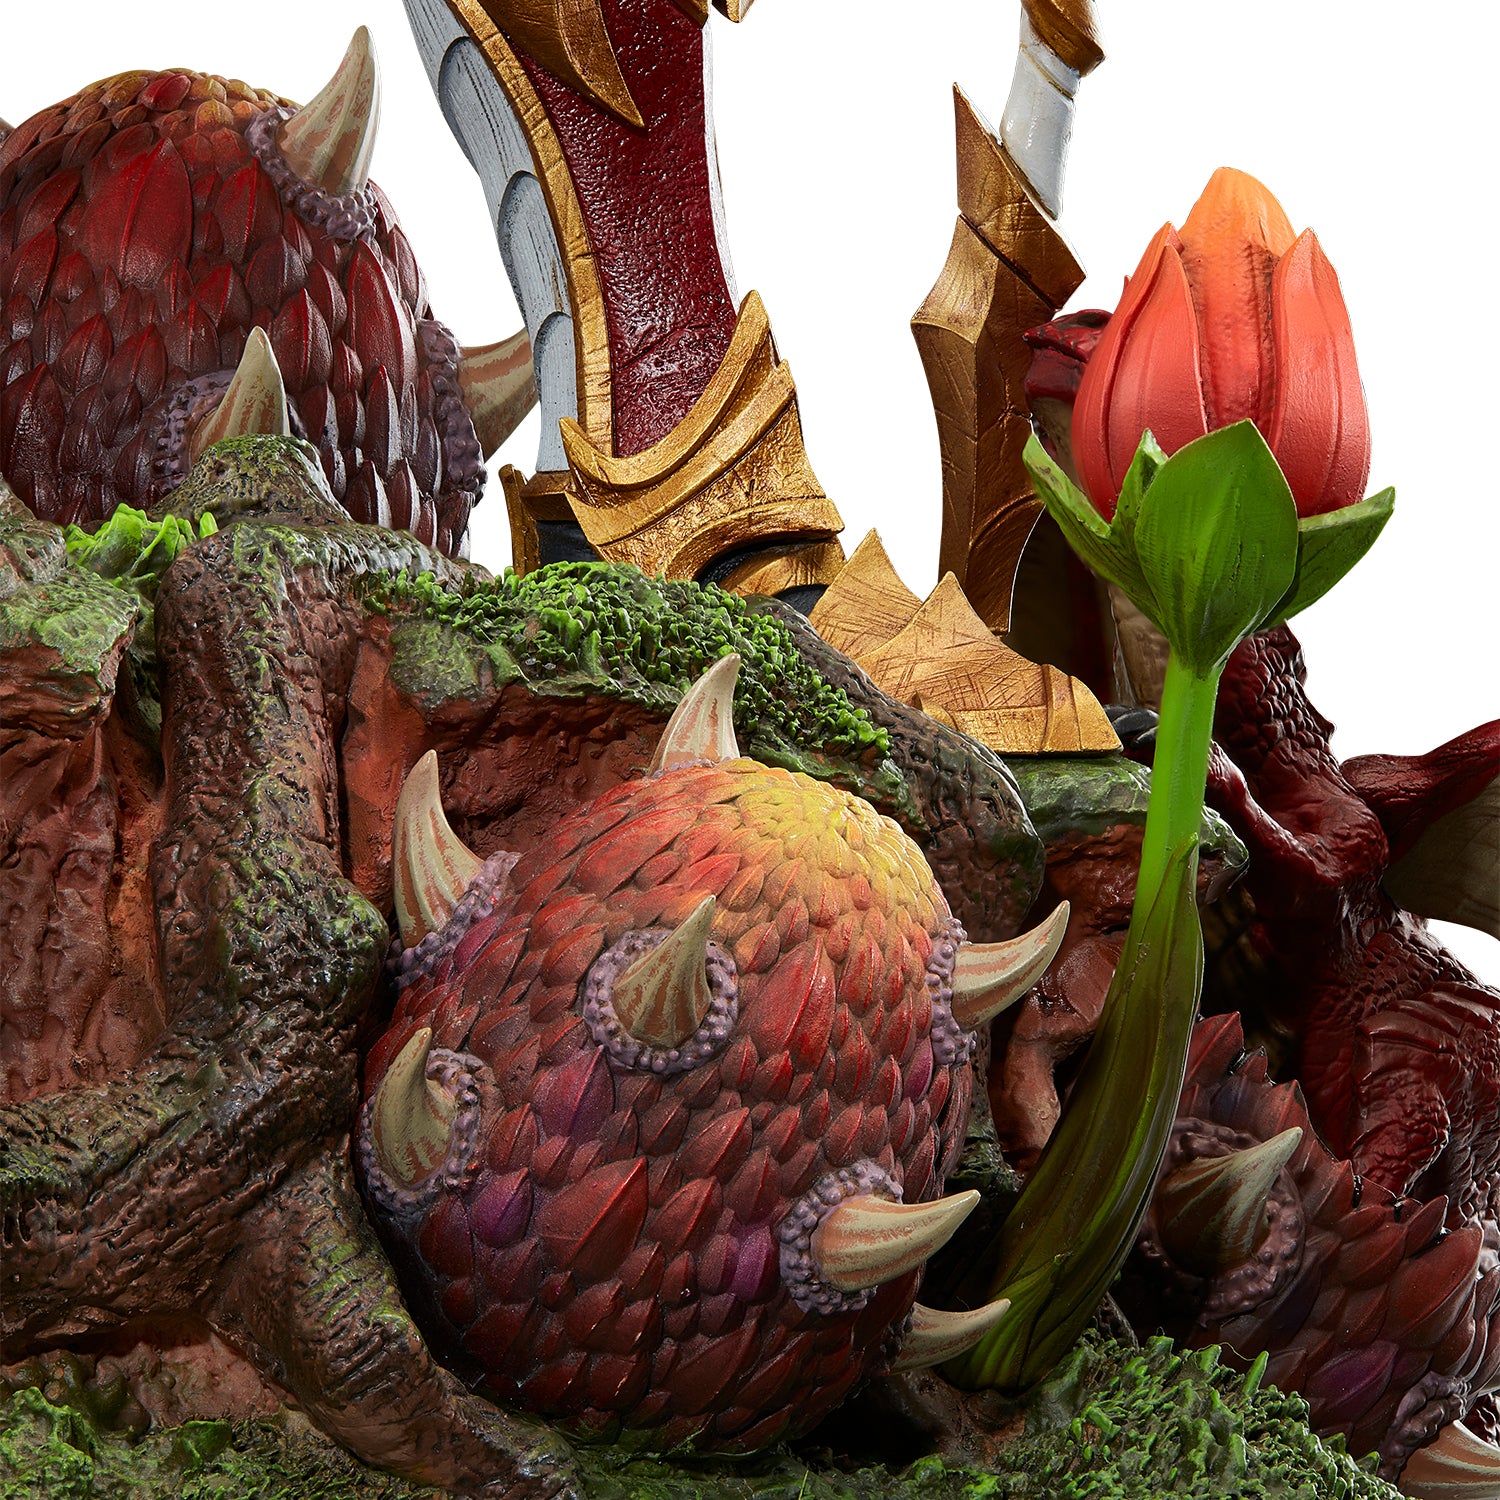 World of Warcraft Alexstrasza 52cm Statue - Dragon Egg Details